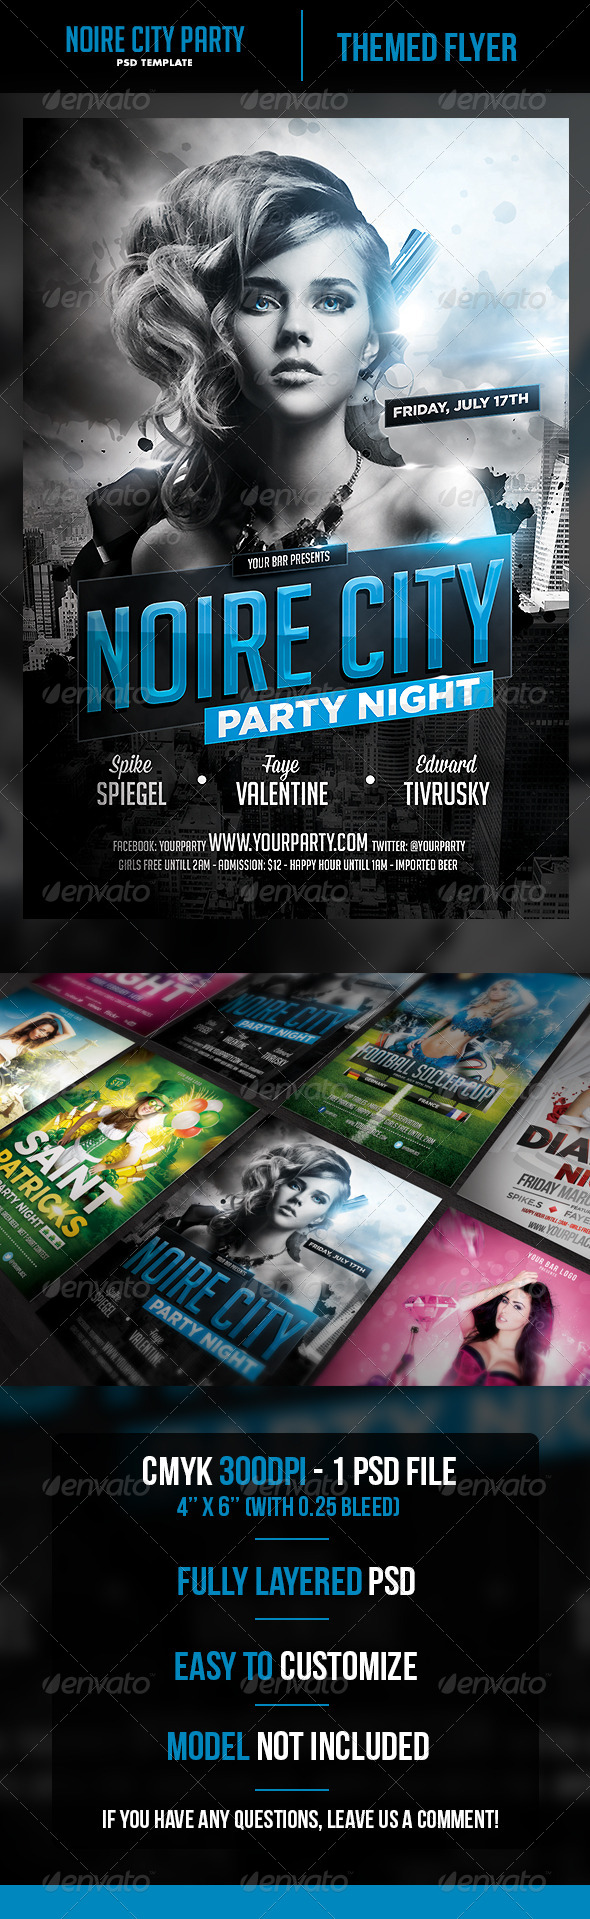 Noire City Party Flyer Template